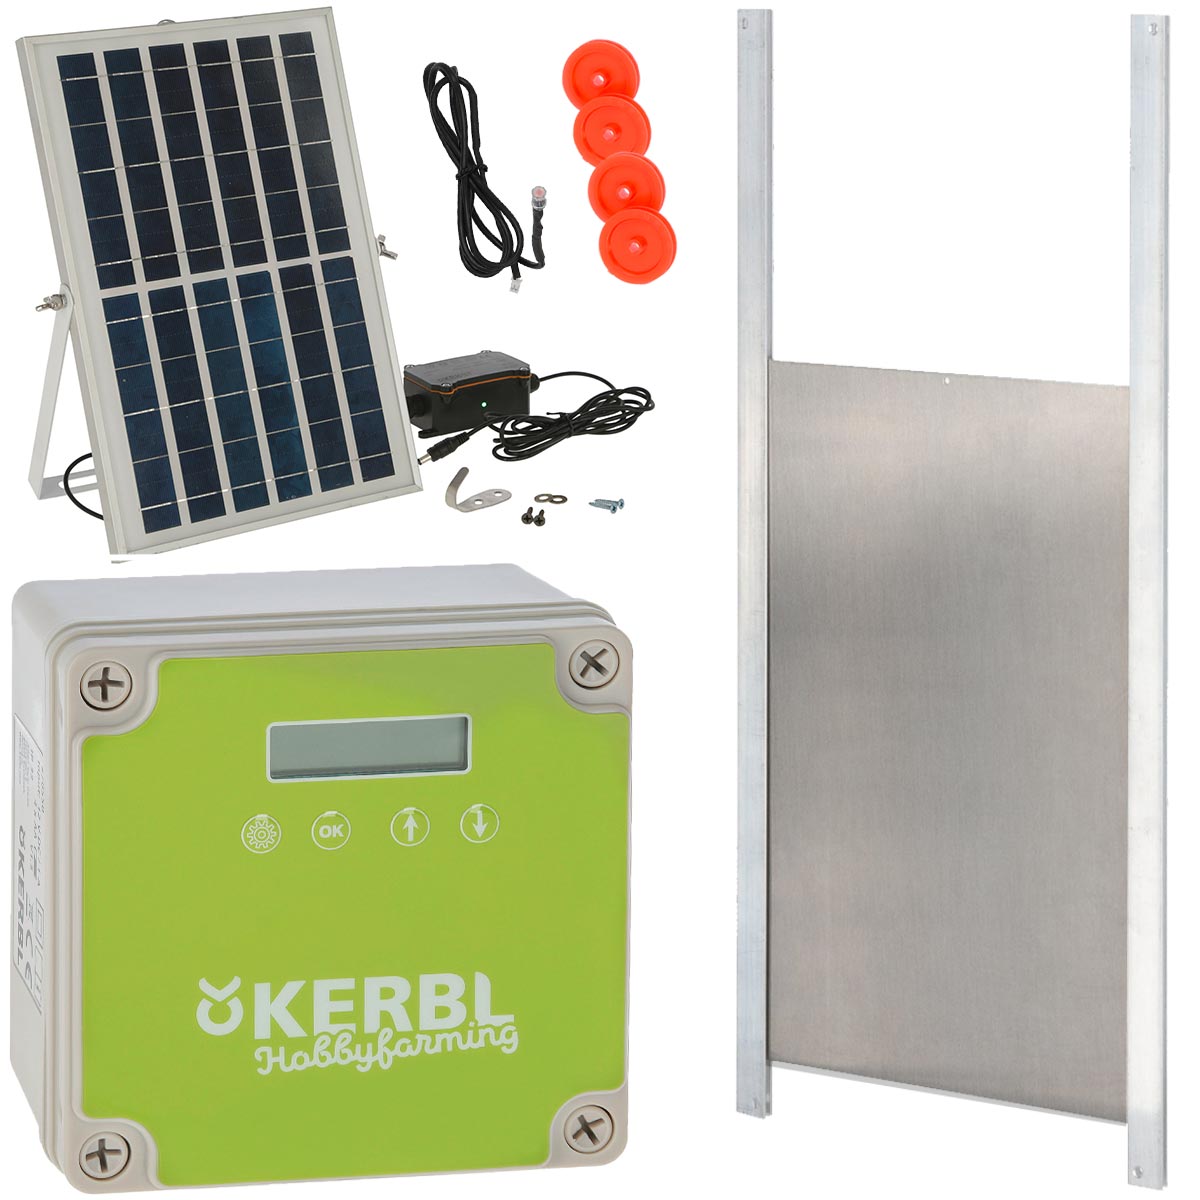 Porte de poulailler èlectrique solaire Kerbl